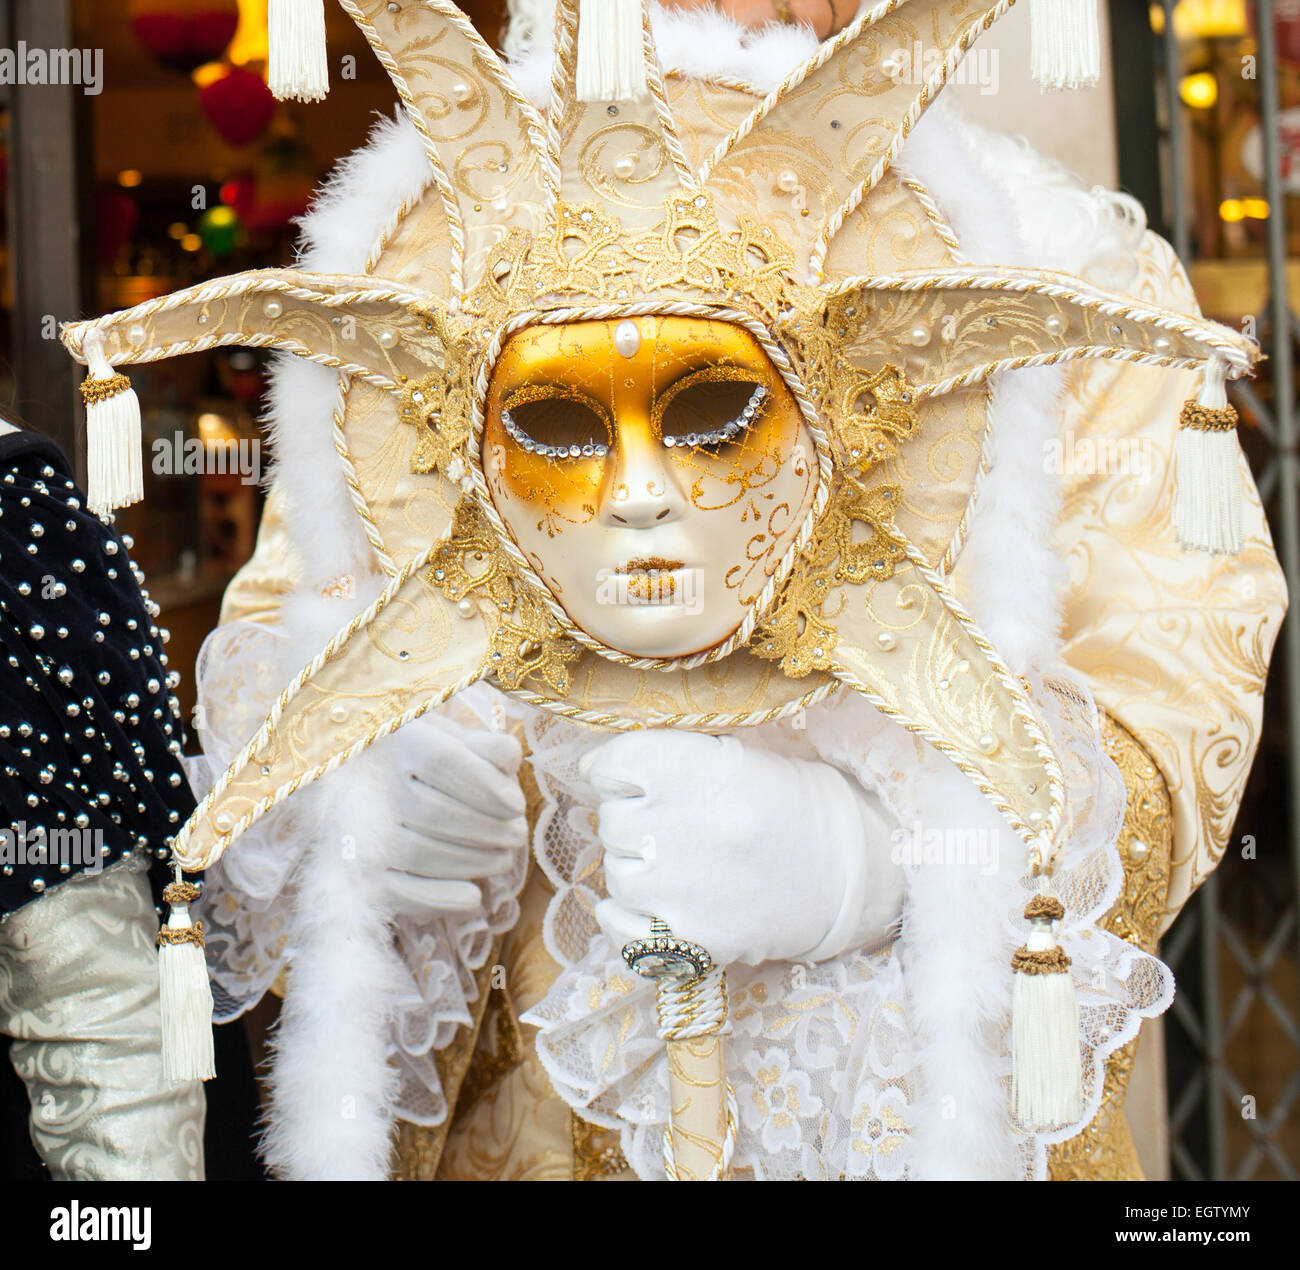 Avec sceptre en forme de masque de carnaval vénitien le soleil. Venise, Italie. Banque D'Images